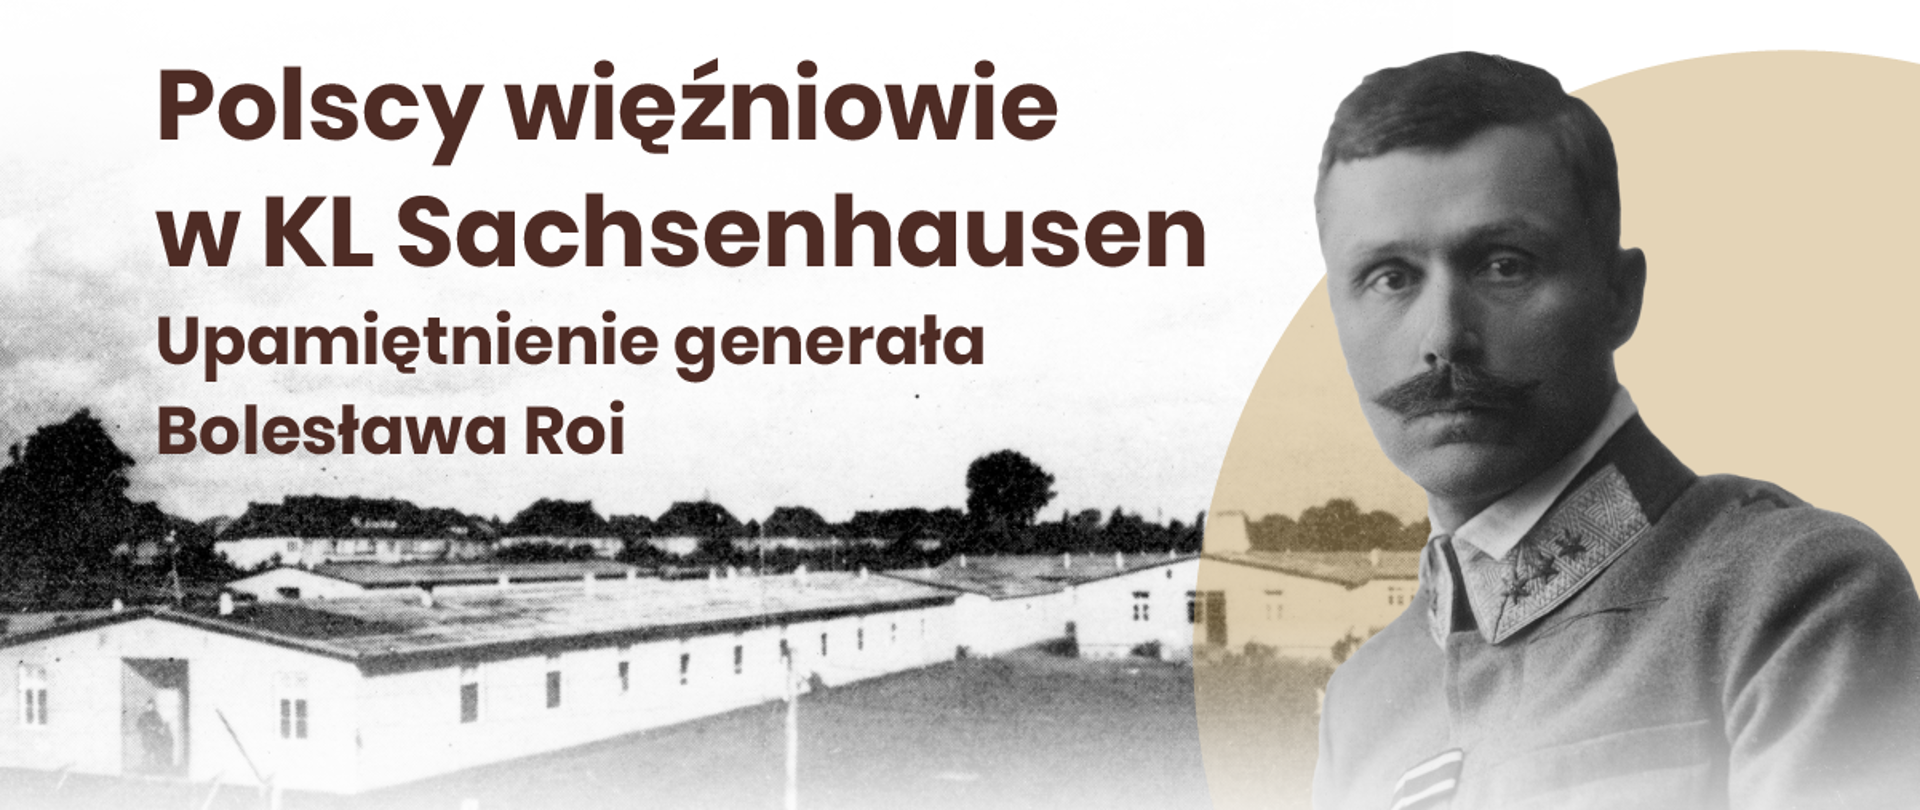 Polscy więźniowie w KL Sachsenhausen - konferencja naukowa 16.06.2021 r. 